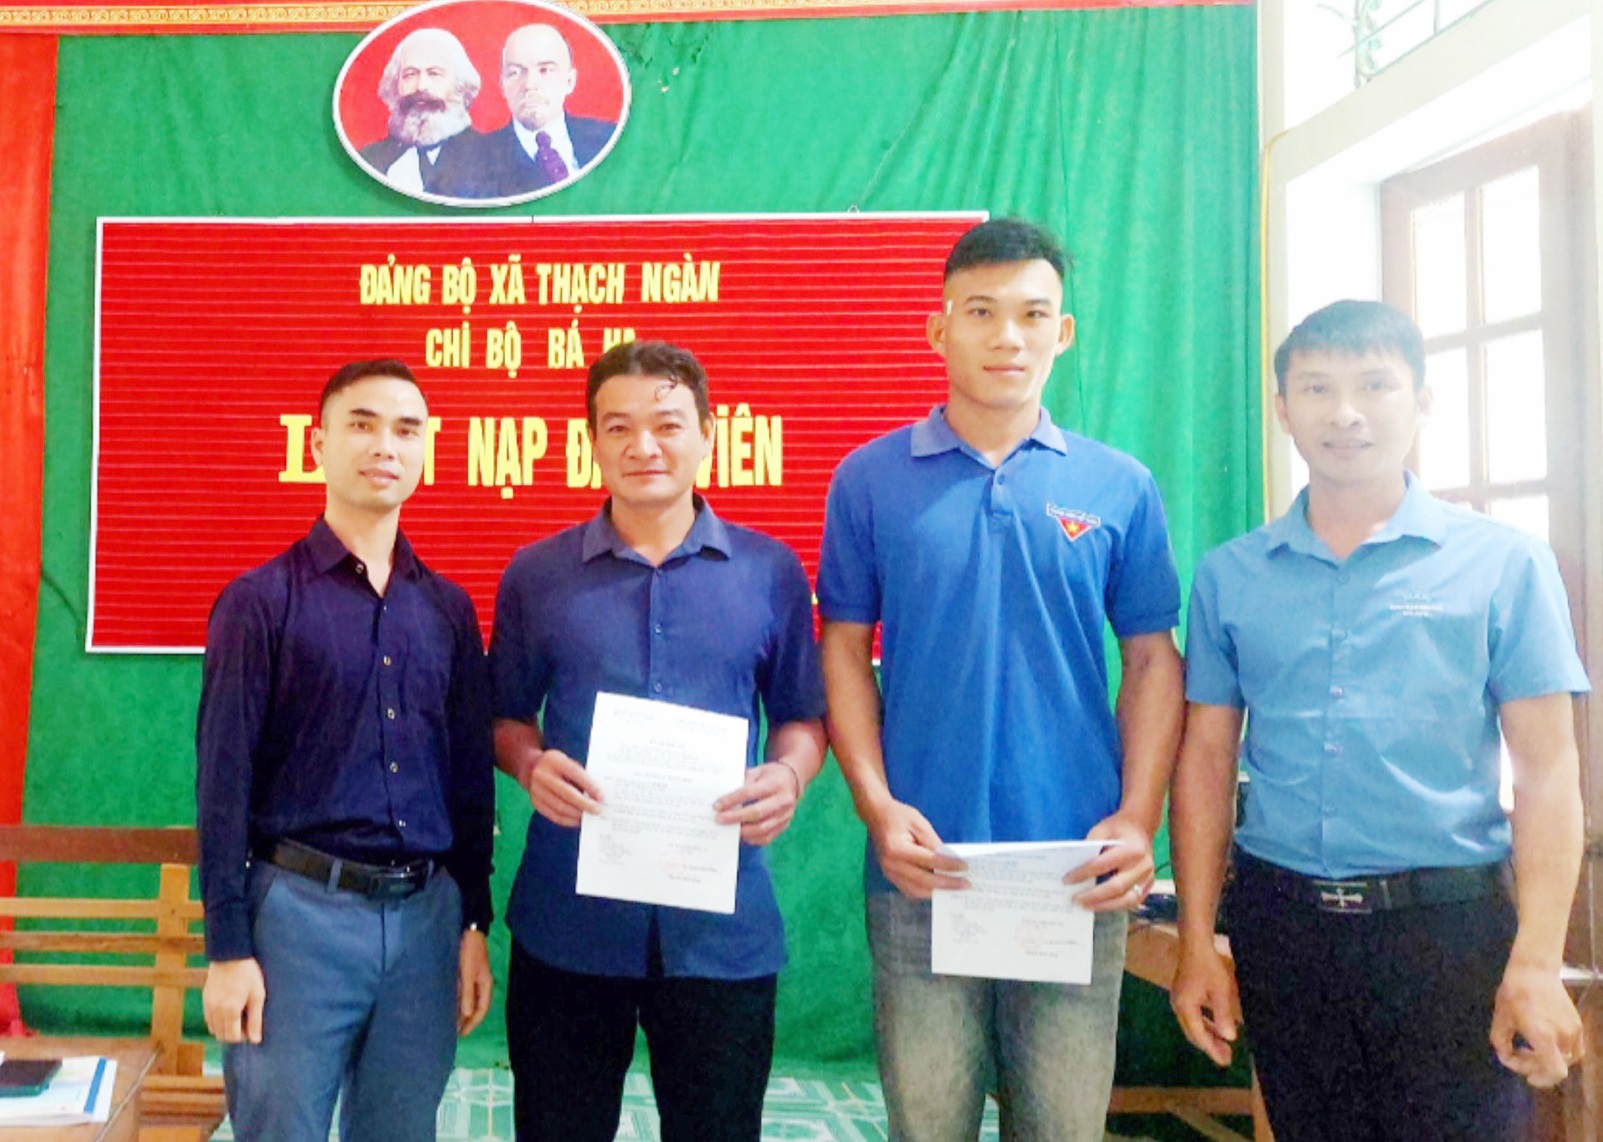 Lễ kết nạp đảng viên tại Chi bộ bản Bá Hạ, xã Thạch Ngàn, huyện Con Cuông, tỉnh Nghệ An.